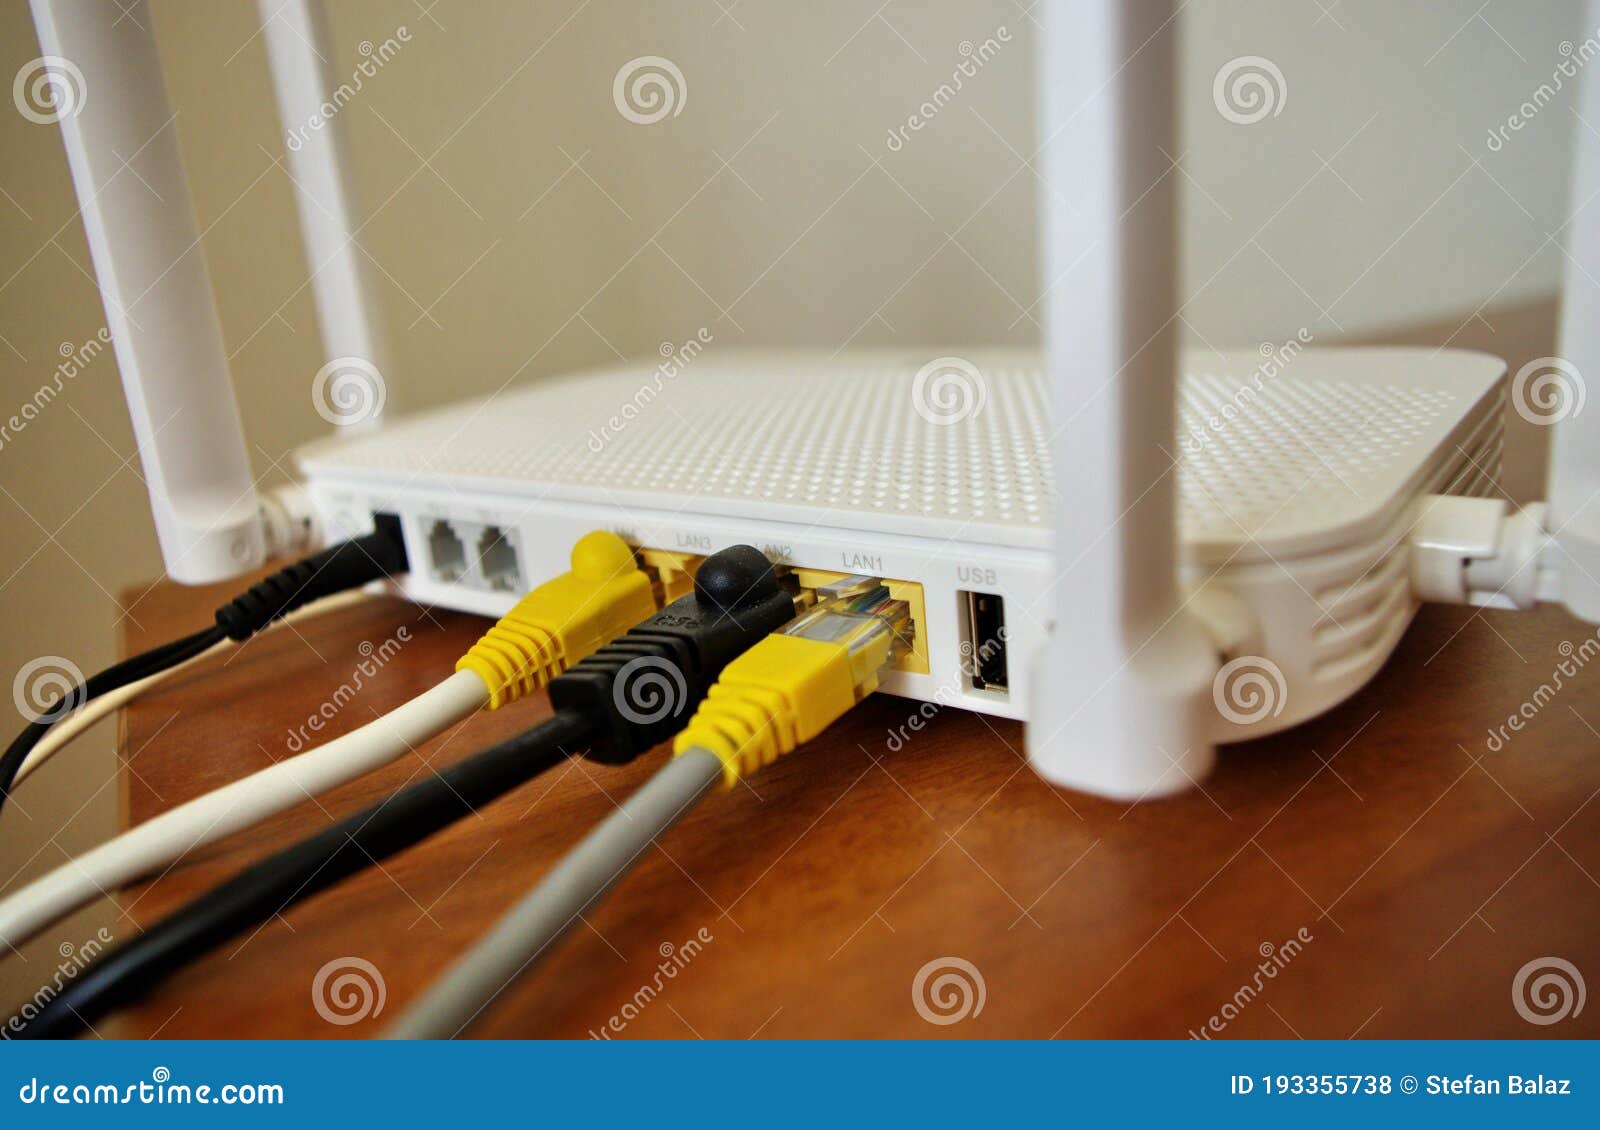 Internet De Fibra óptica. Cables De Red Conectados a Un Concepto De Prueba  De Velocidad Del Router. Enrutador De Internet Inalámbr Foto de archivo -  Imagen de negocios, enchufe: 193355738